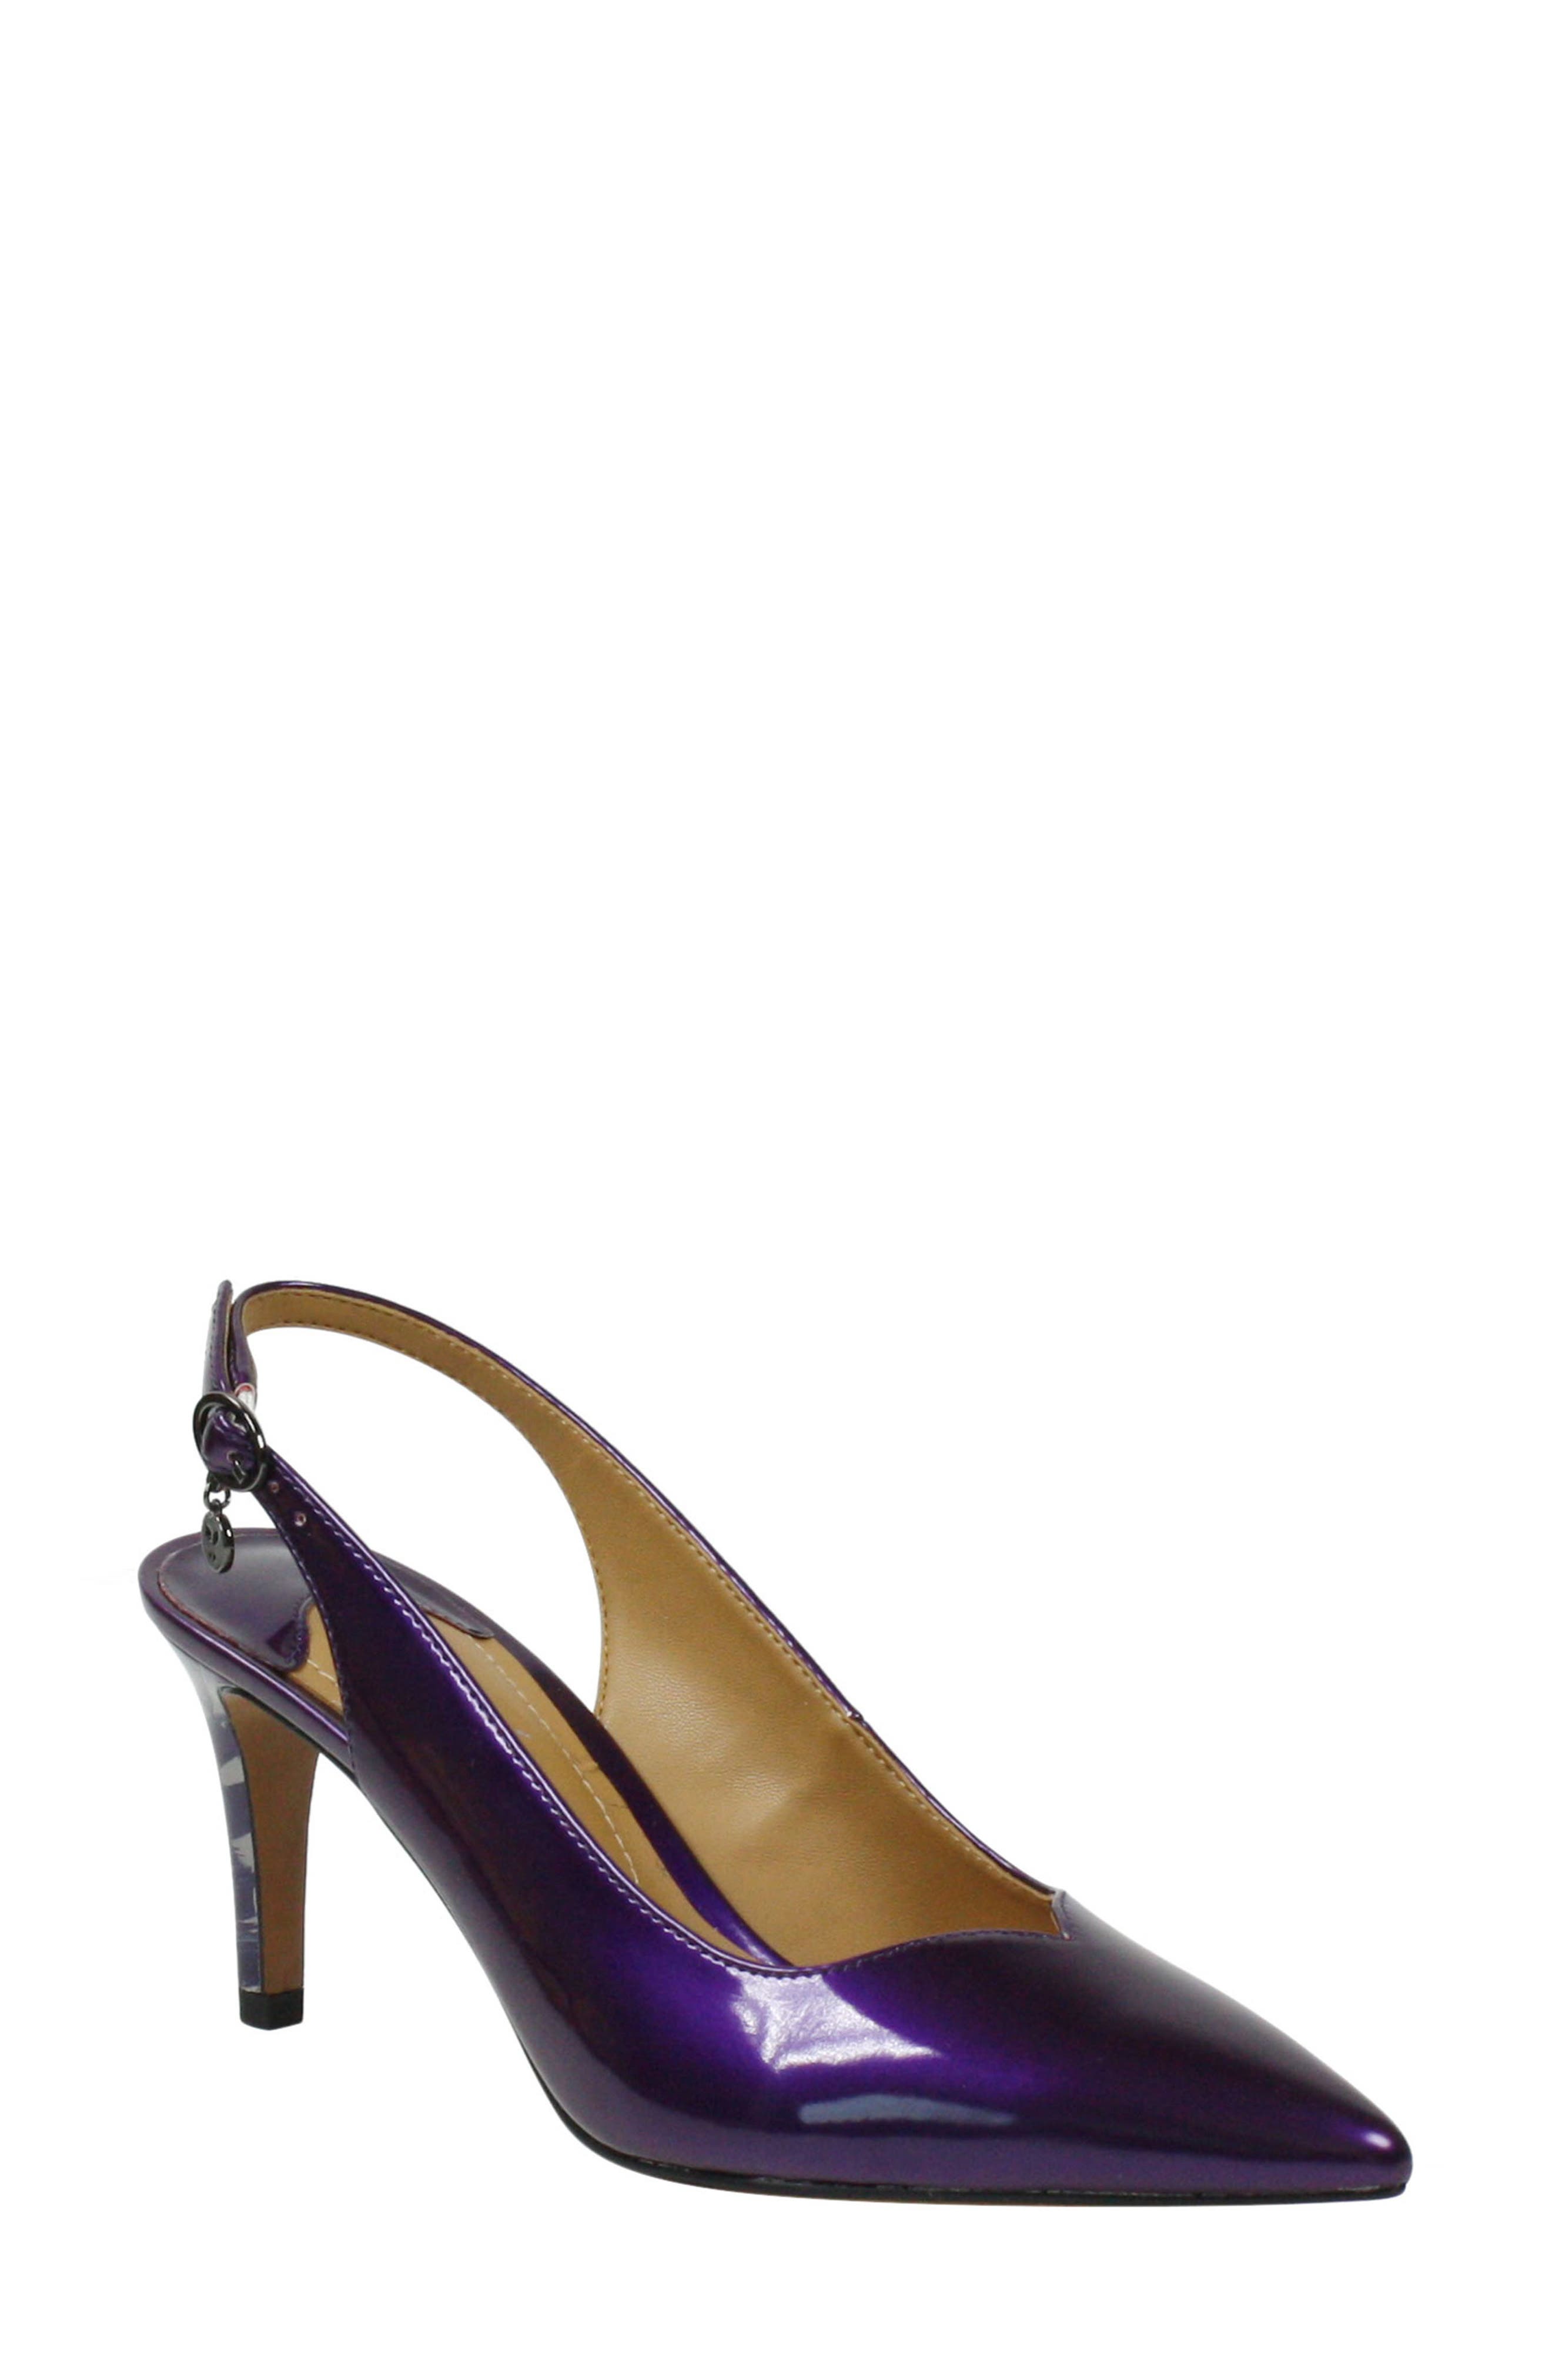 purple women's shoes heels